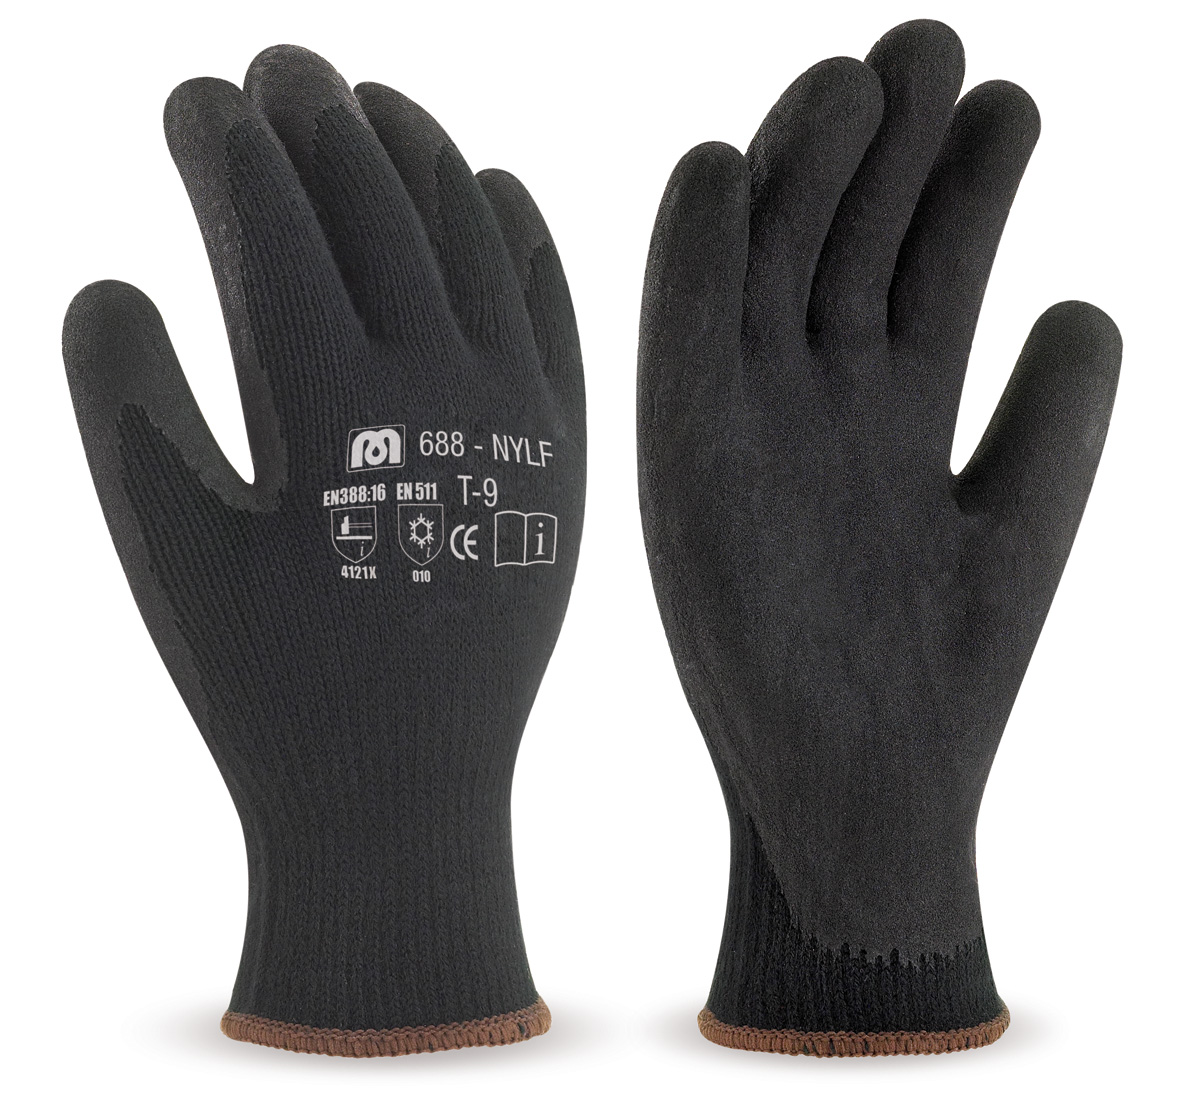 688-NYLF Gants de Travail Nylon Gant nylon noir avec revêtement latex de couleur noire